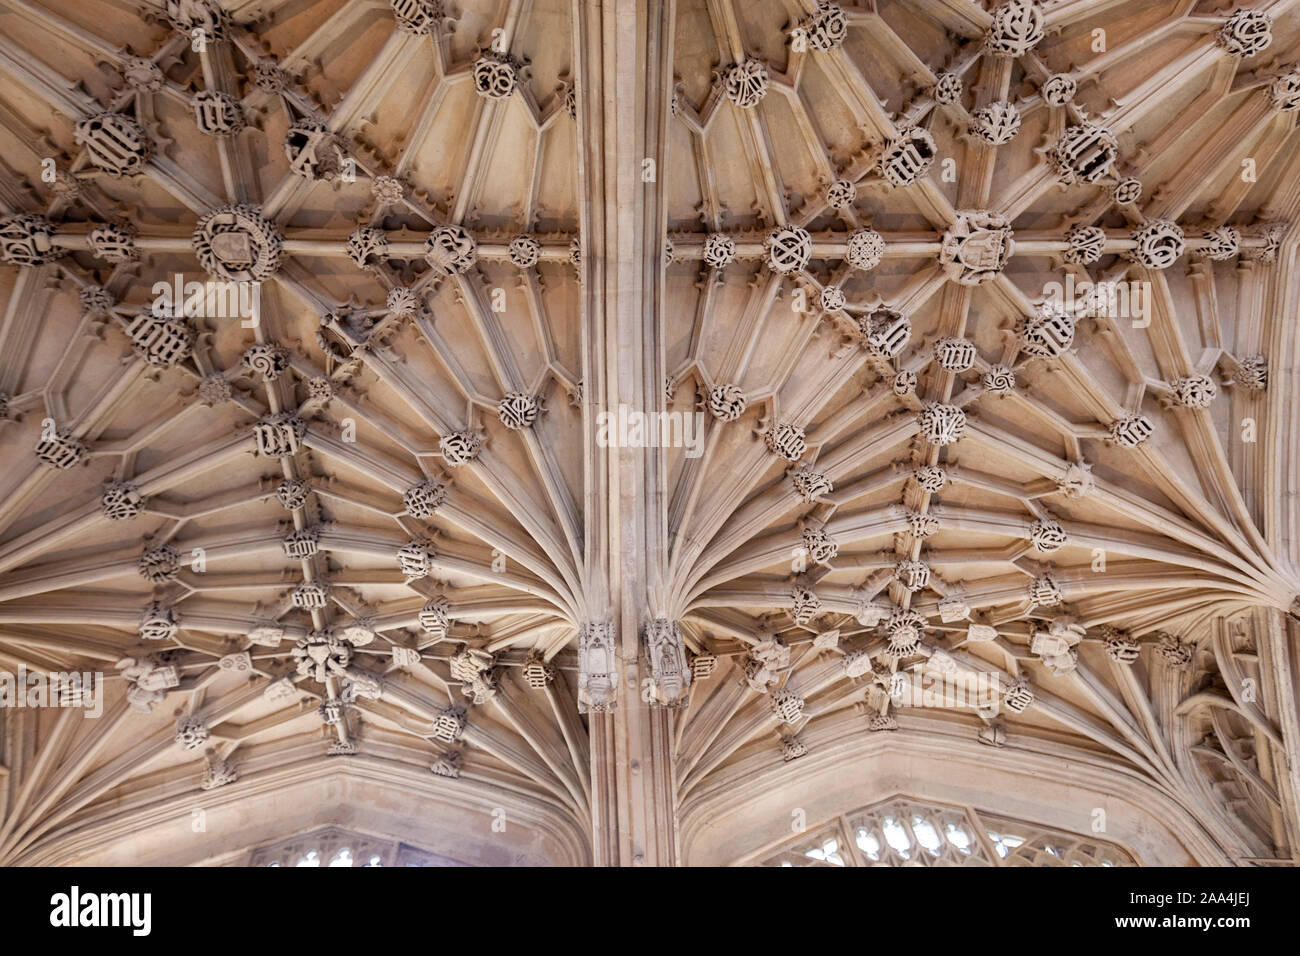 Plafond avec voûtes lierne dans Divinity School, édifice médiéval et prix dans le style perpendiculaire, Oxford, Oxfordshire, England, UK Banque D'Images